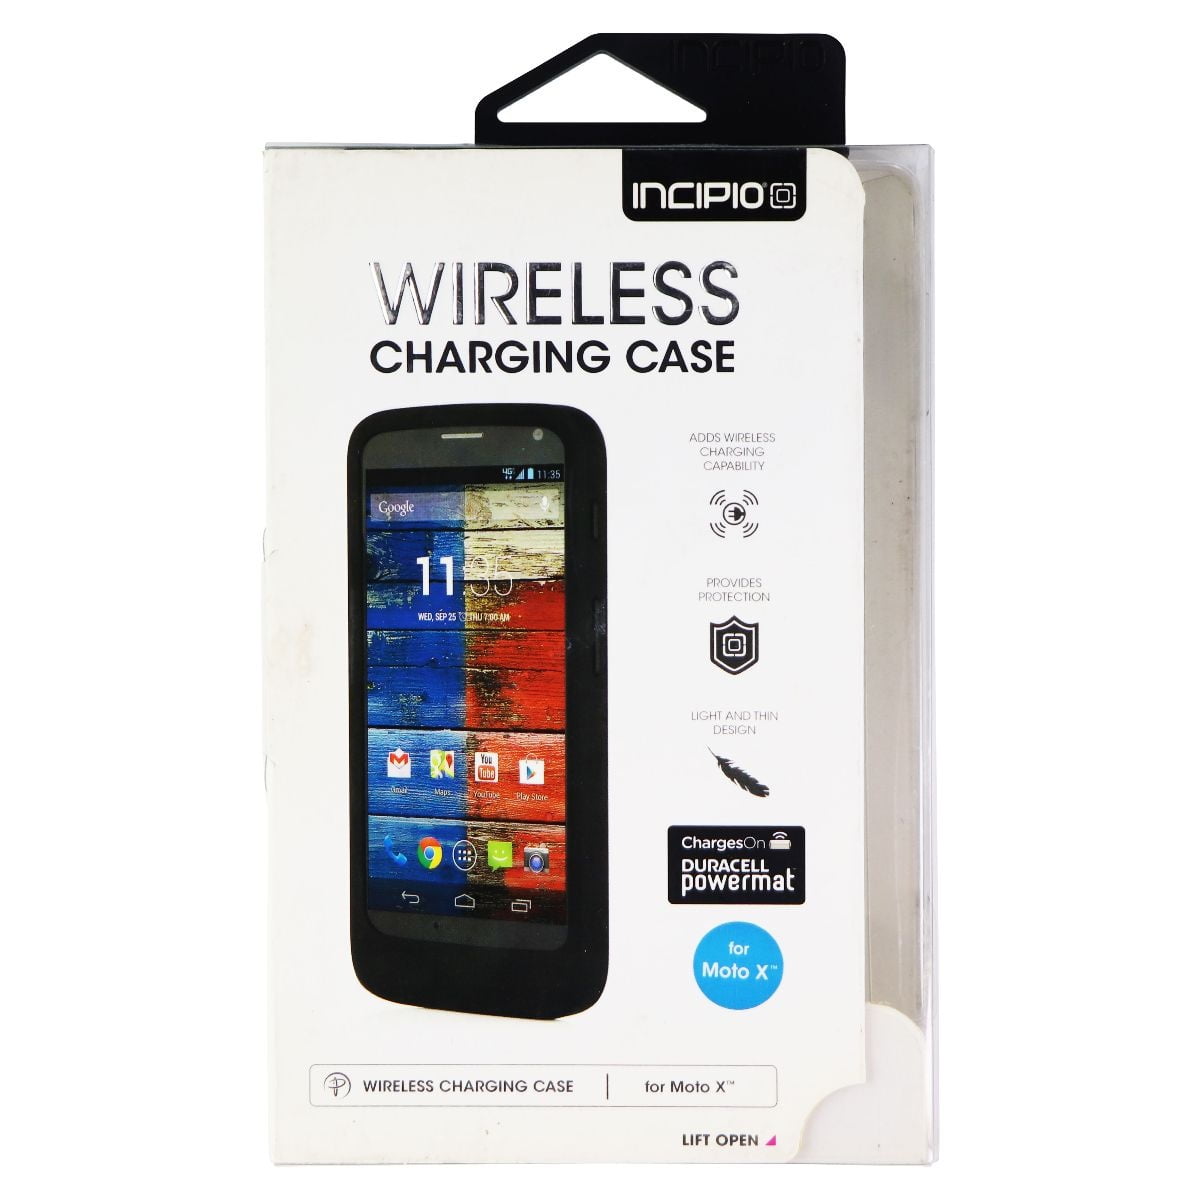 Incipio Wireless Charging Case for Motorola Moto X (XT1058) Smartphones -  Blue 